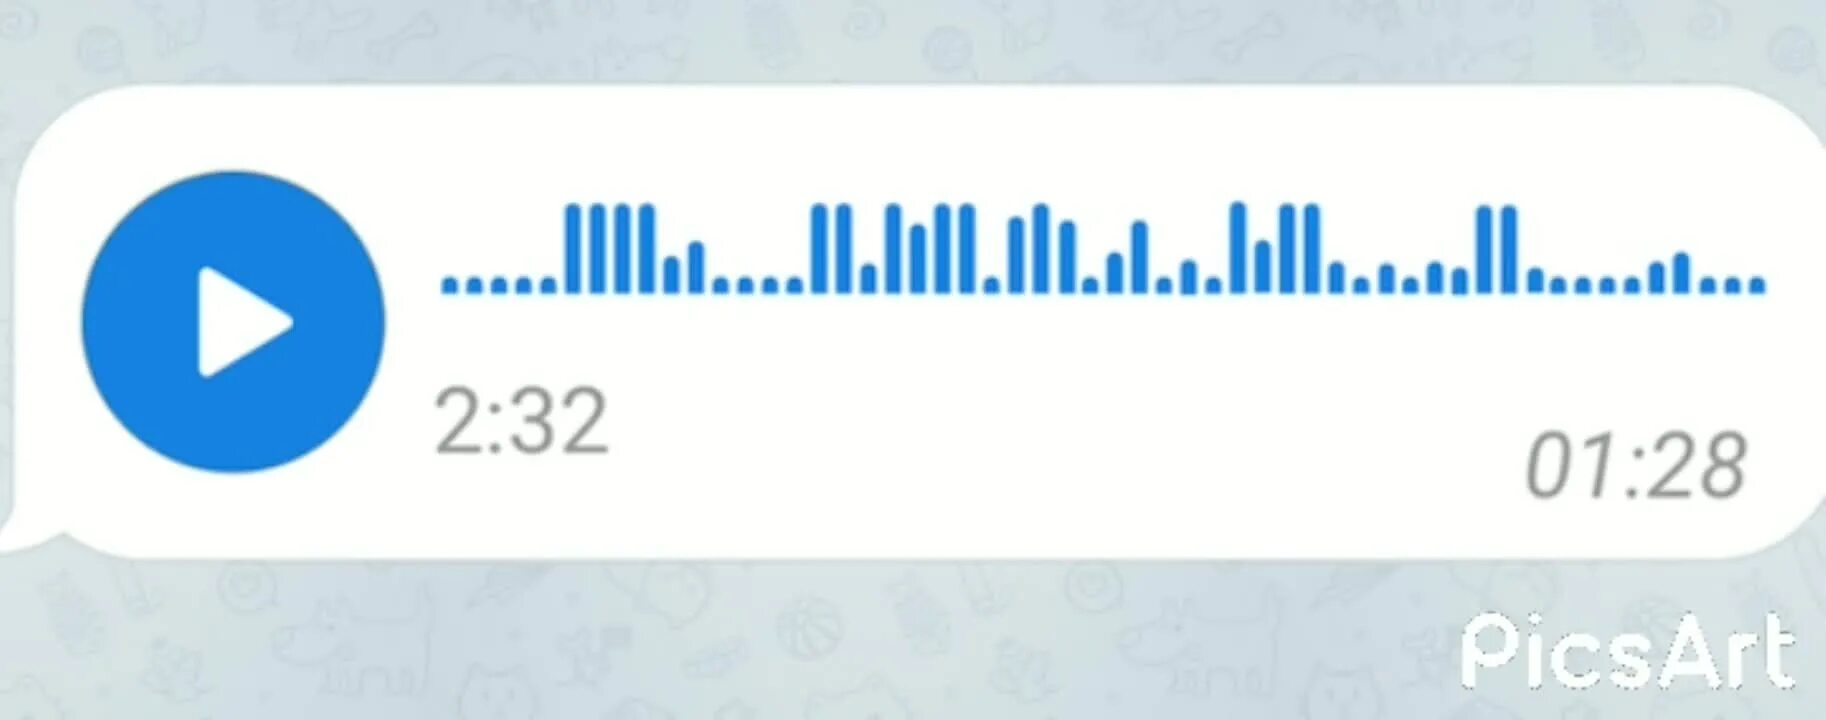 Аудио в голосовое сообщение. Голосовое сообщение логотип. Изображение голосового сообщения. Значок голосовового сообщения. Голосовое сообщение без фона.